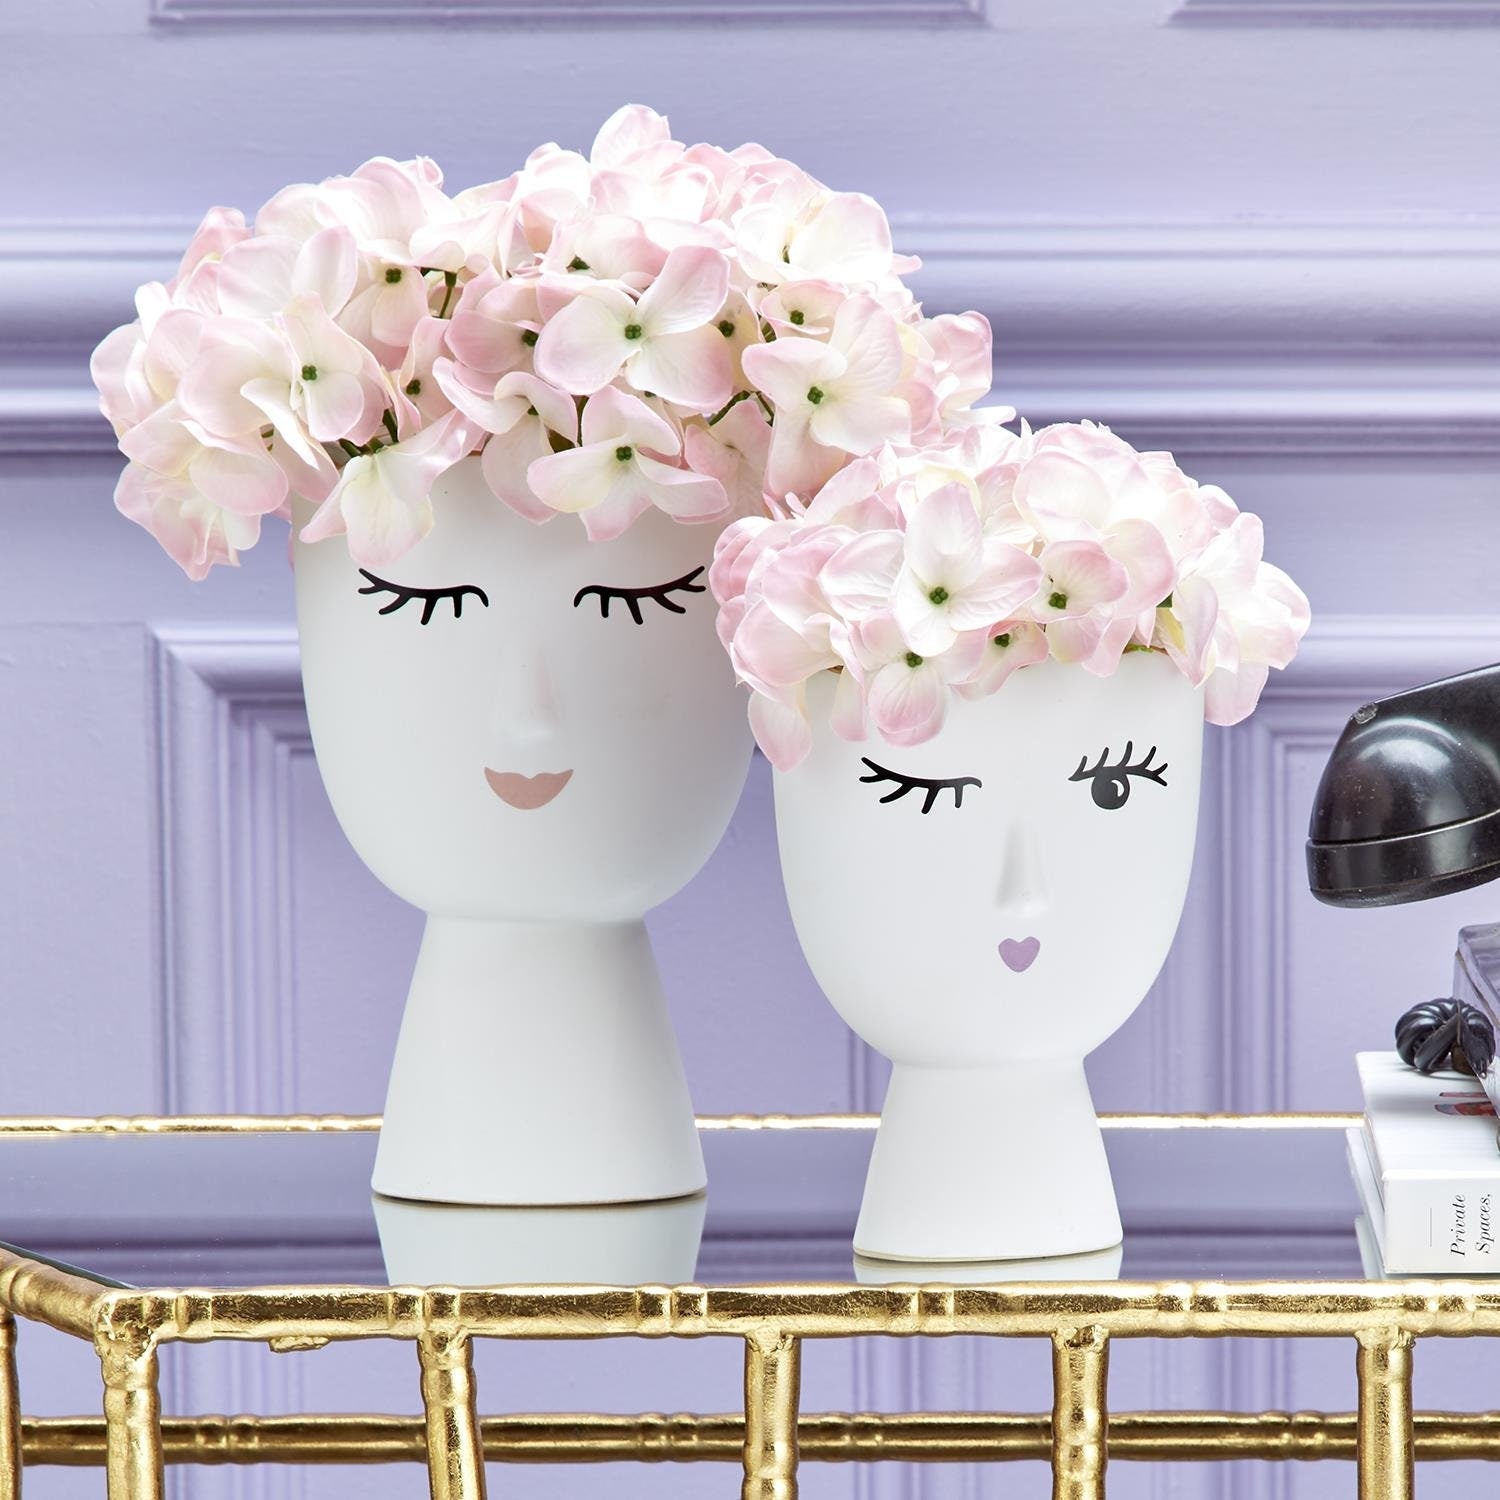 Face Vase White Porcelain with Gold Trim - 2 sizes available | Utensil Holder | Flower Vase | Housewarming Gift | Vanity Vase | Girl Bedroom Decor - DiamondValeDecor